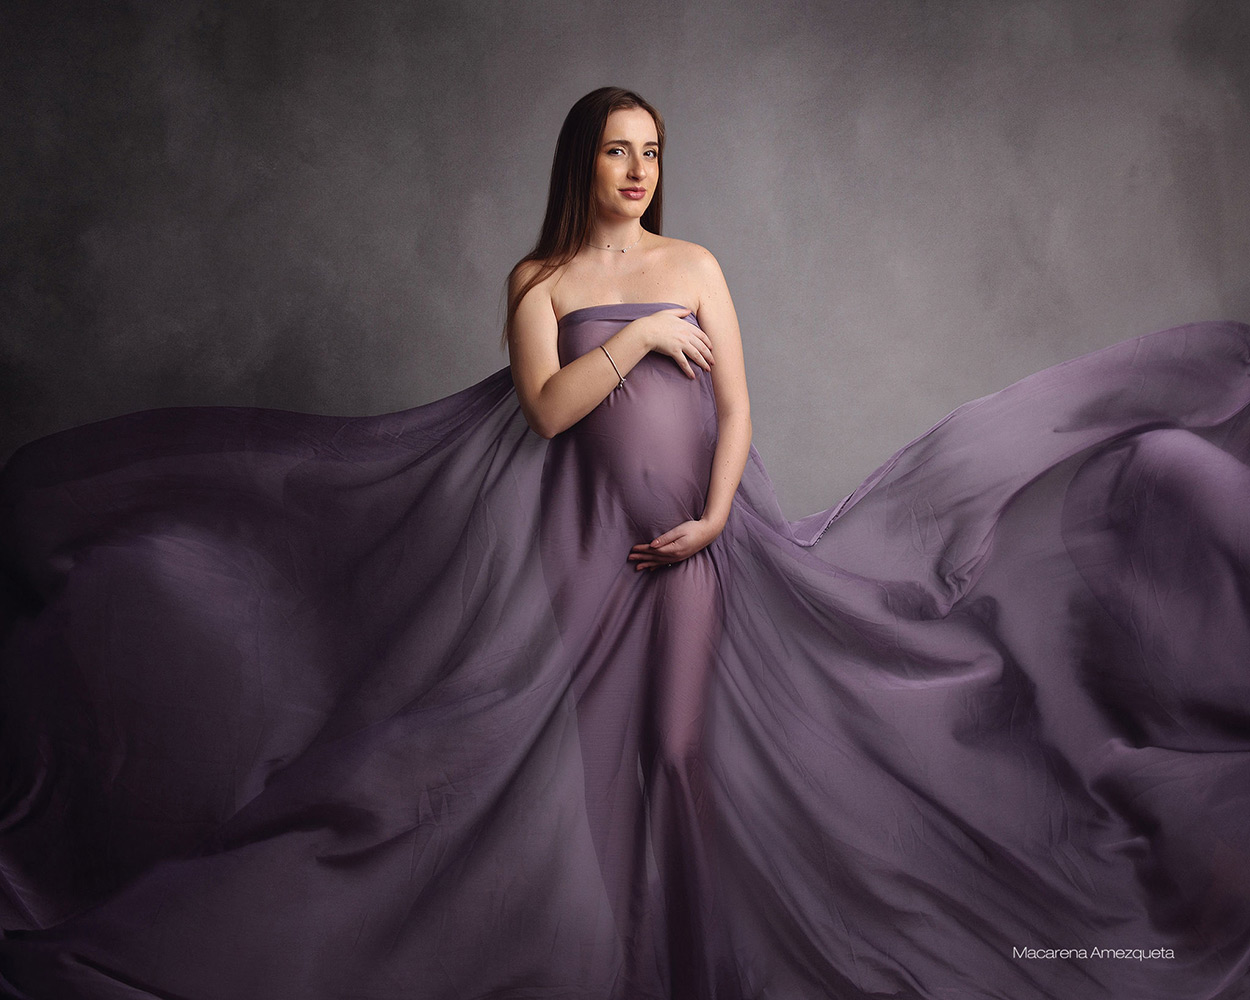 Sesiones de fotos para embarazadas – Rebeca